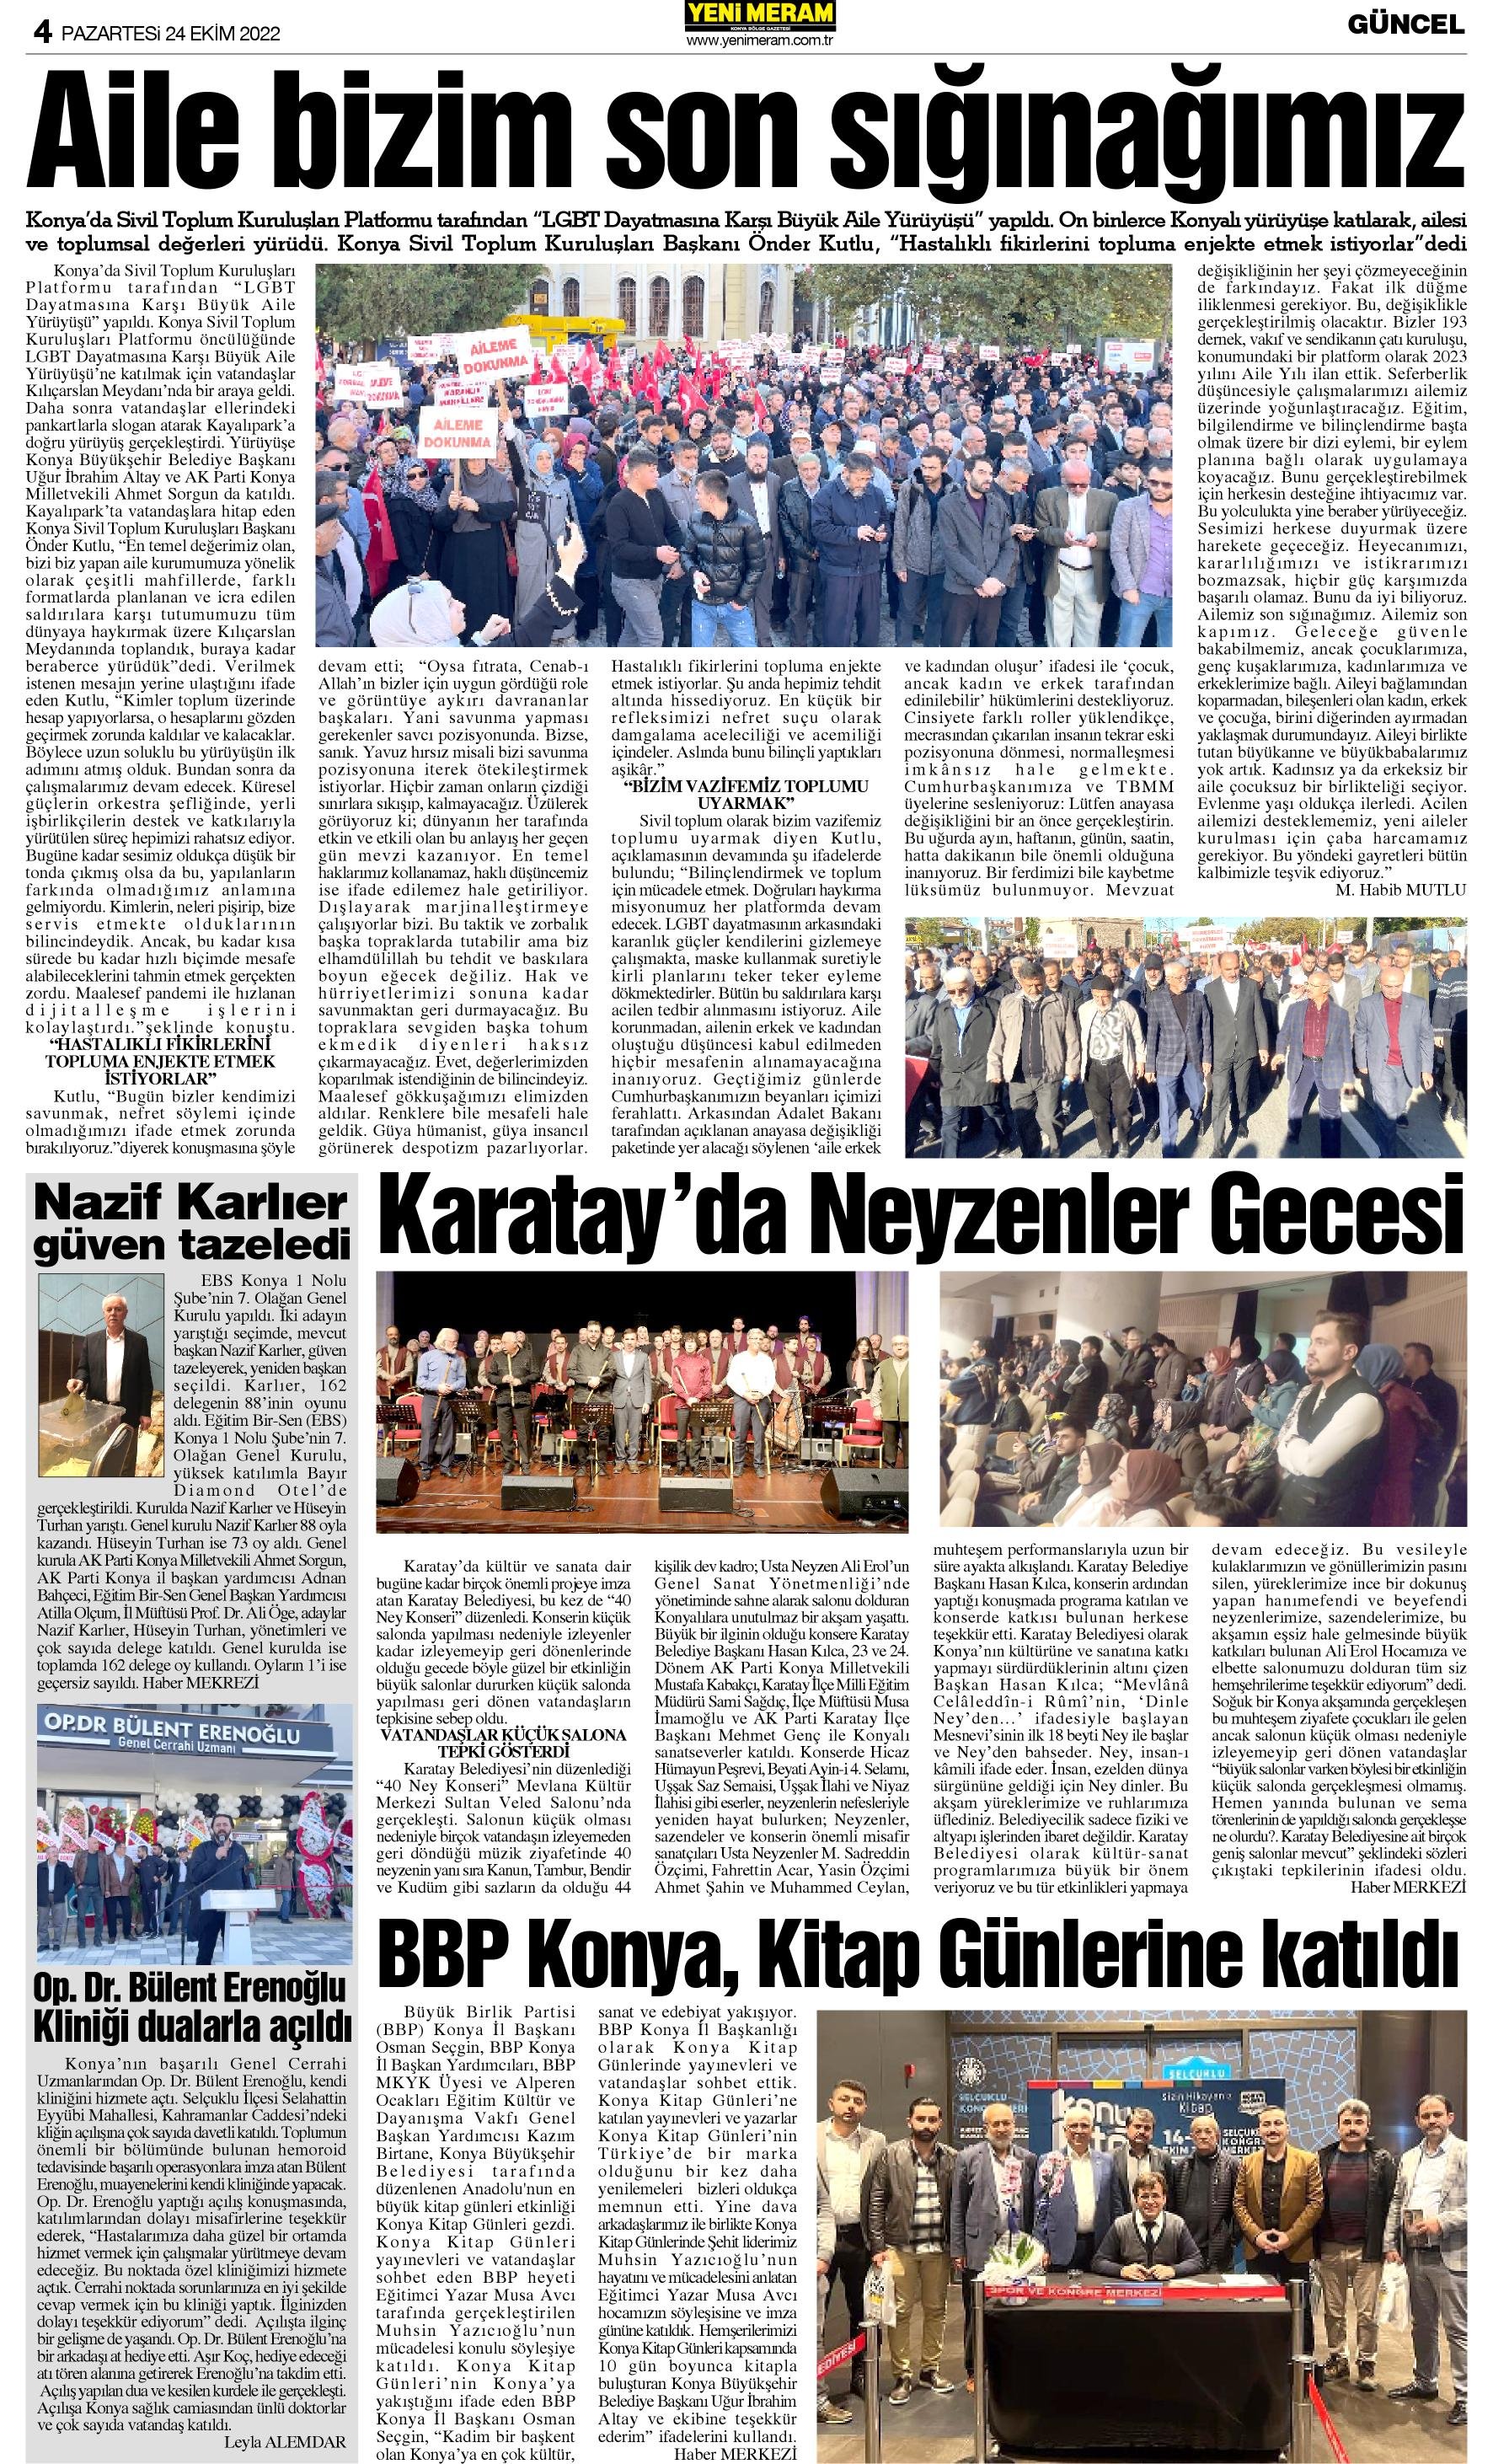 24 Ekim 2022 Yeni Meram Gazetesi
